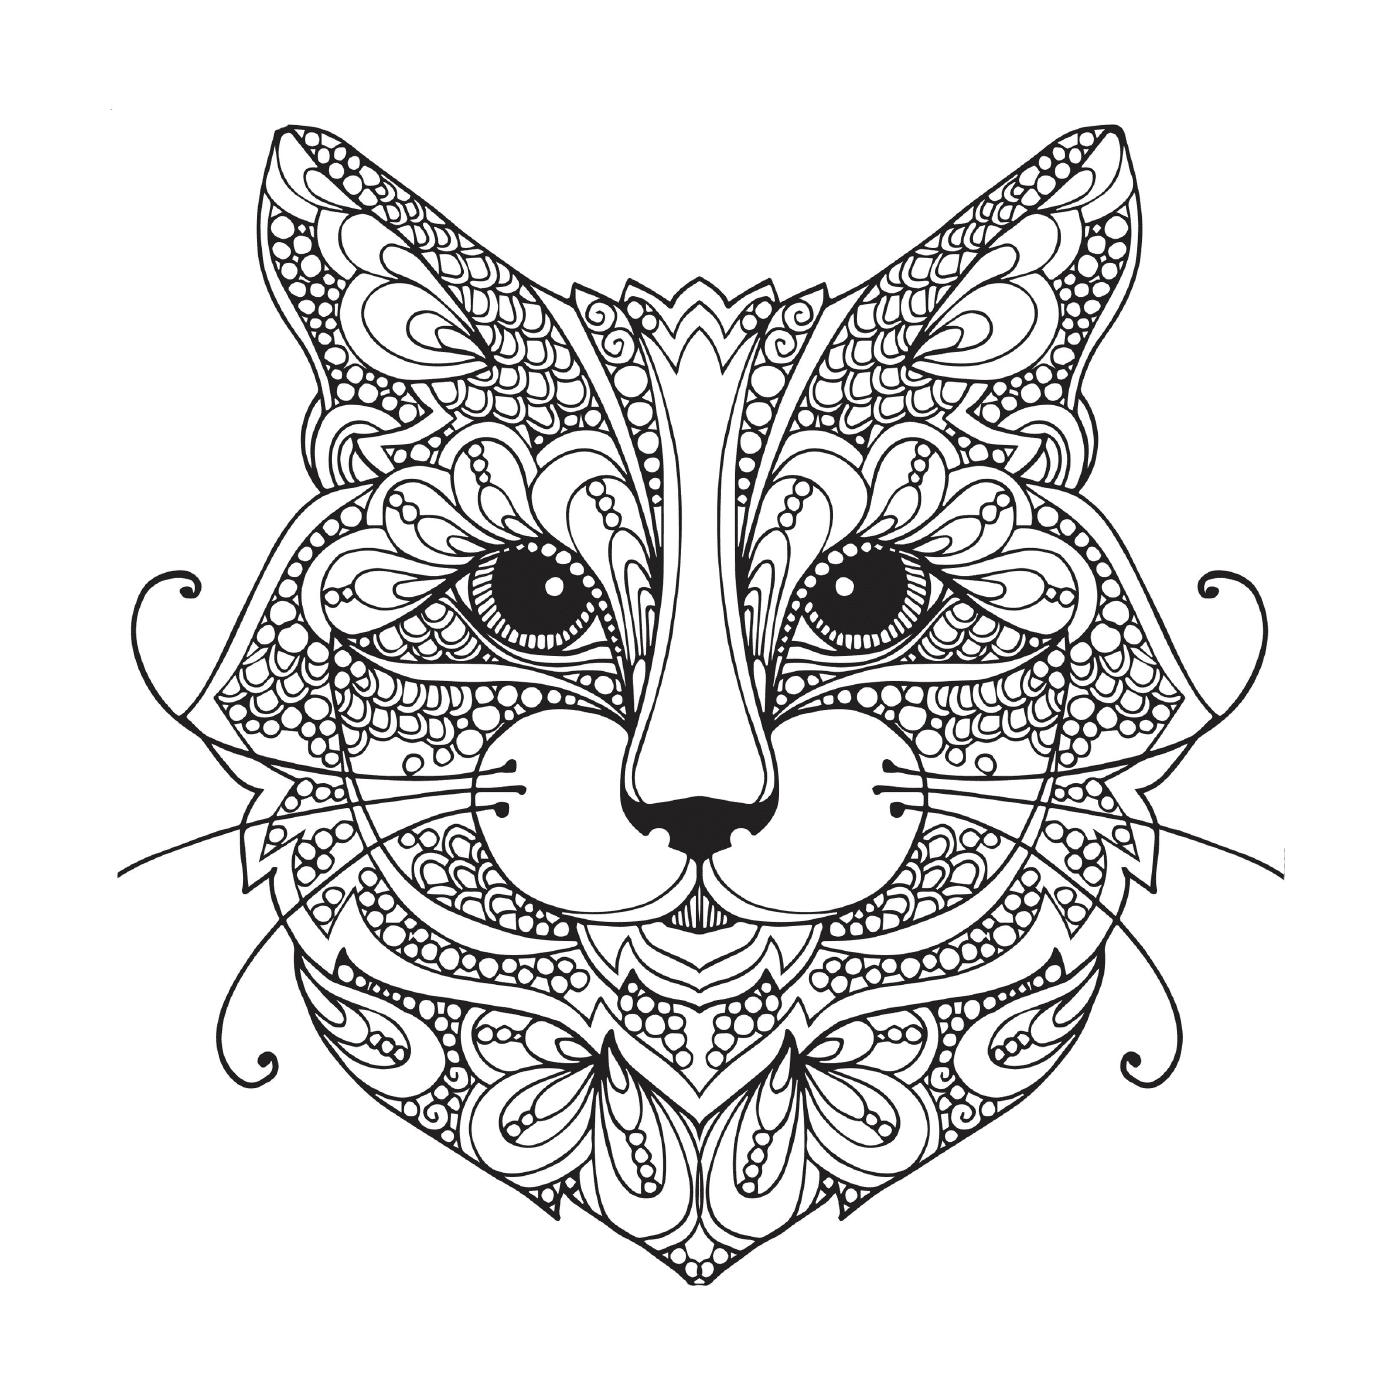  Katze mit ornamentalen Mustern auf ihrem Gesicht 